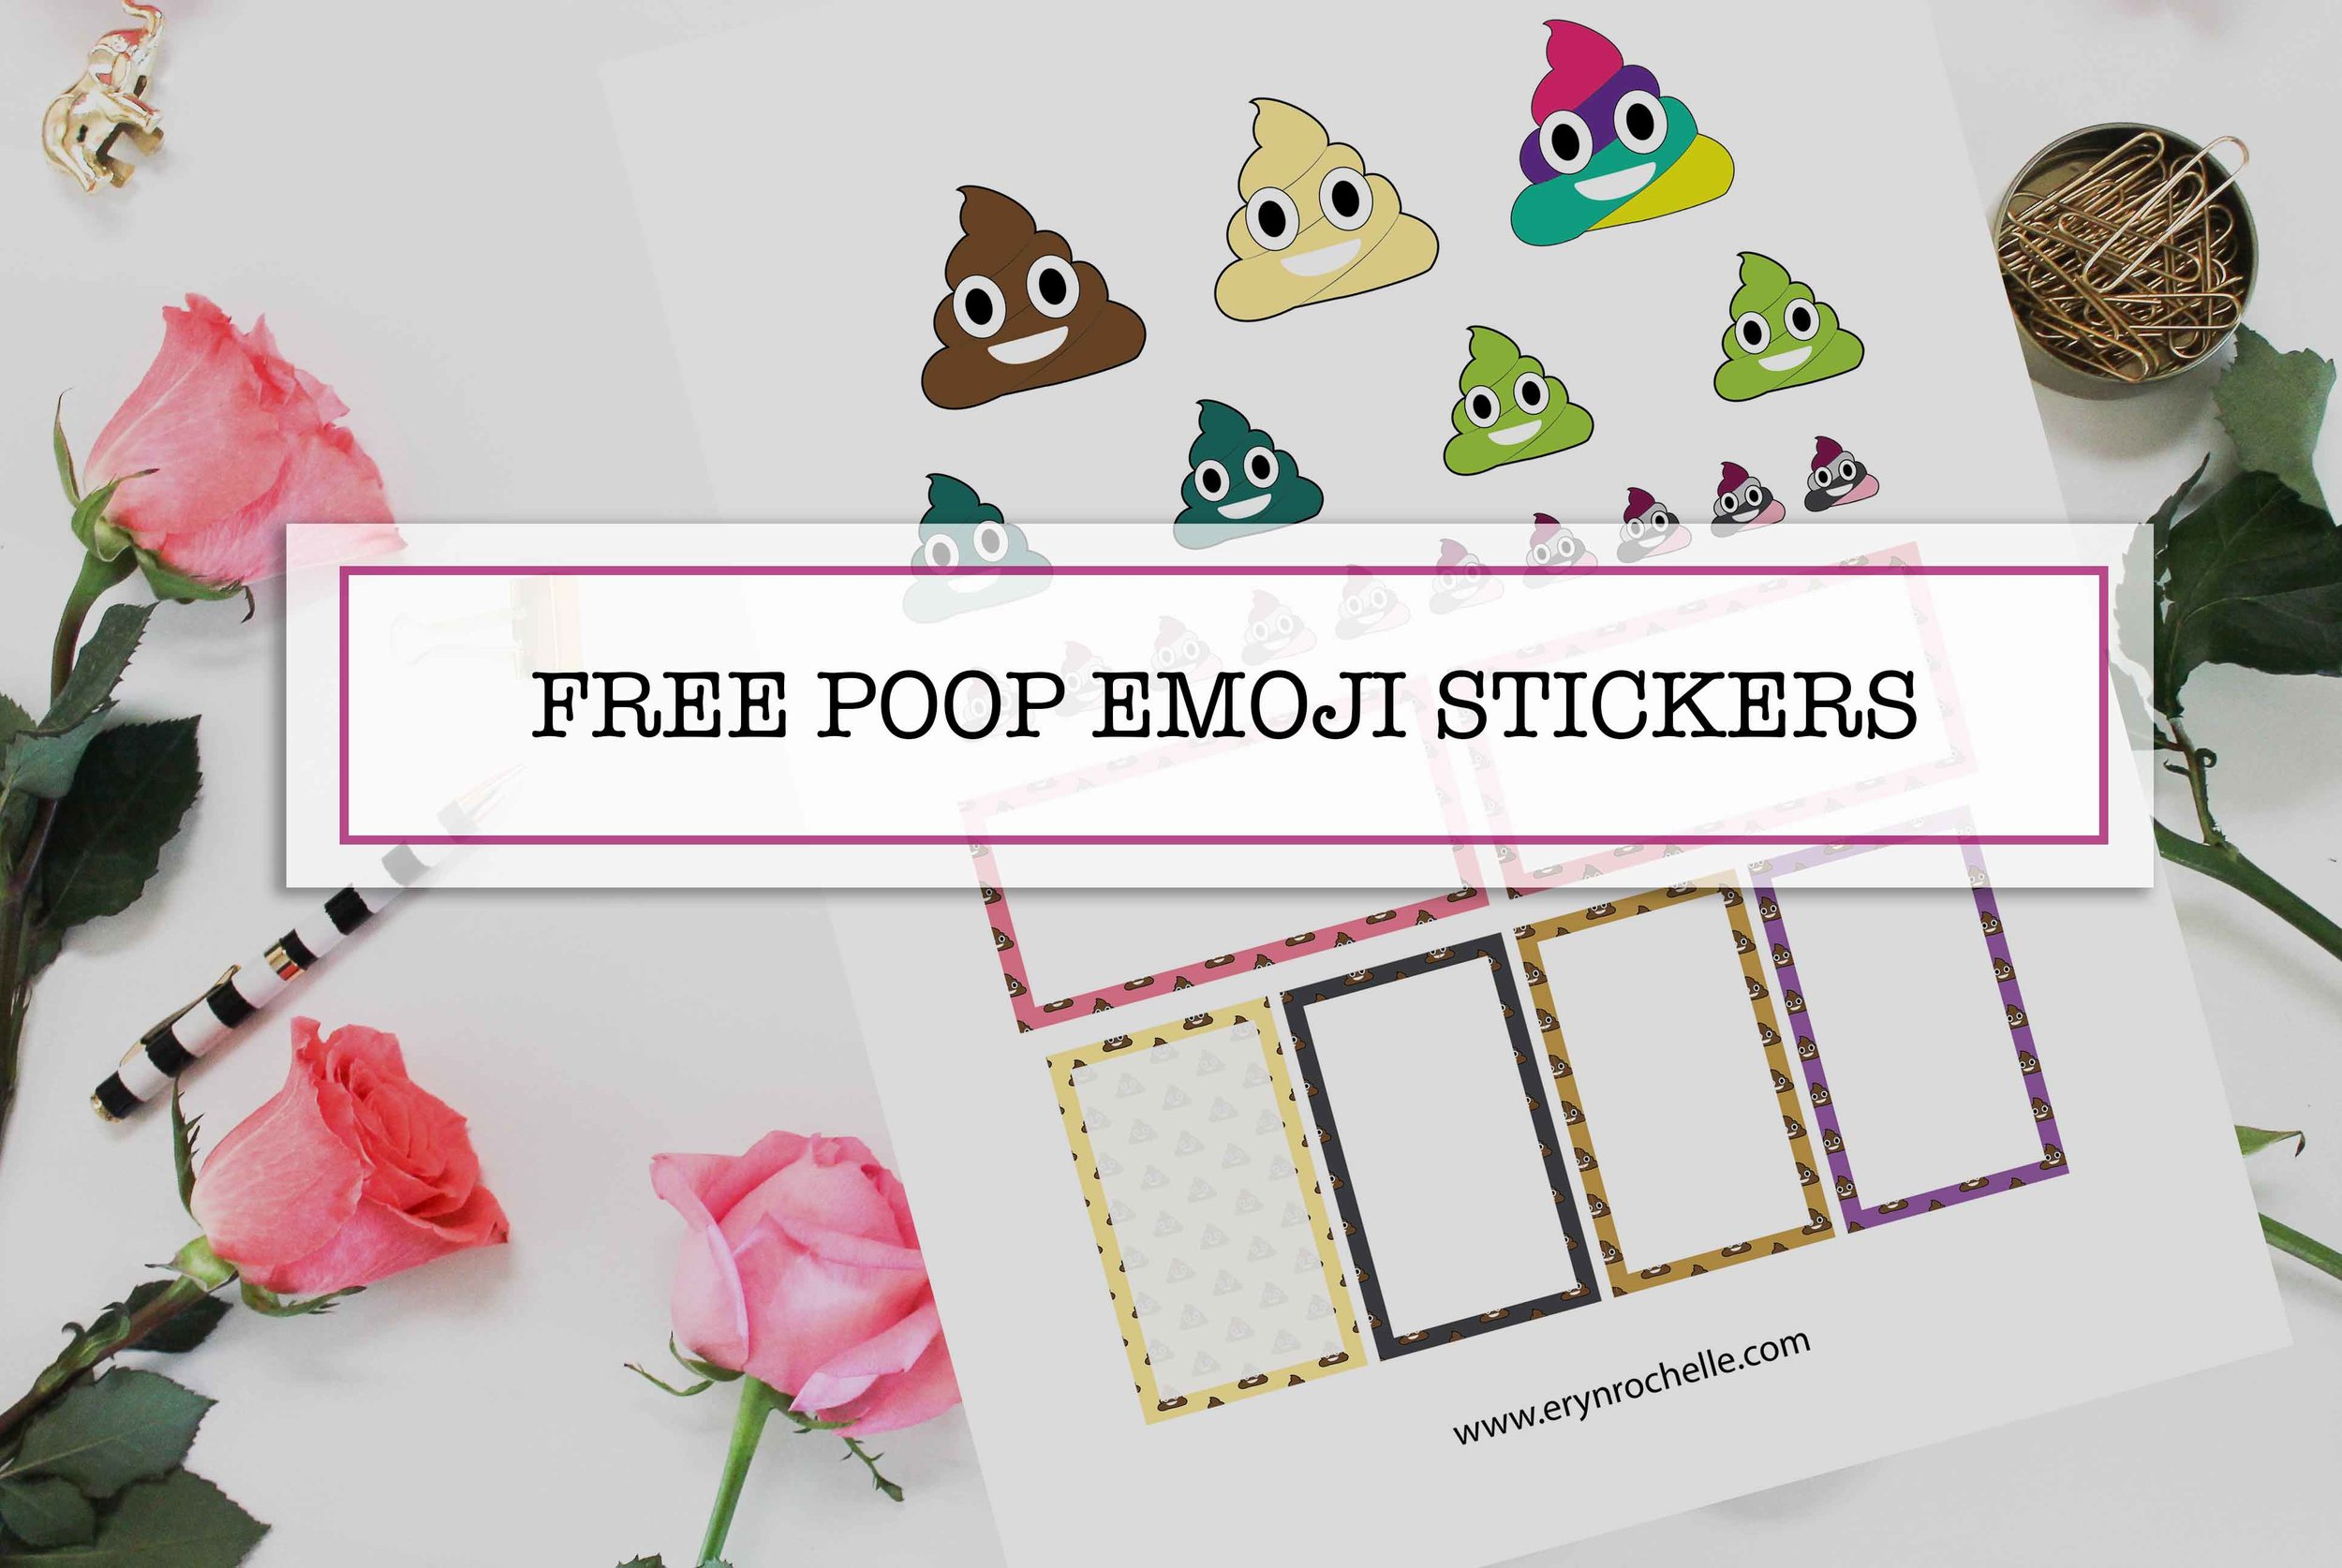 Free Printable: Poop Emoji Sticker Pack